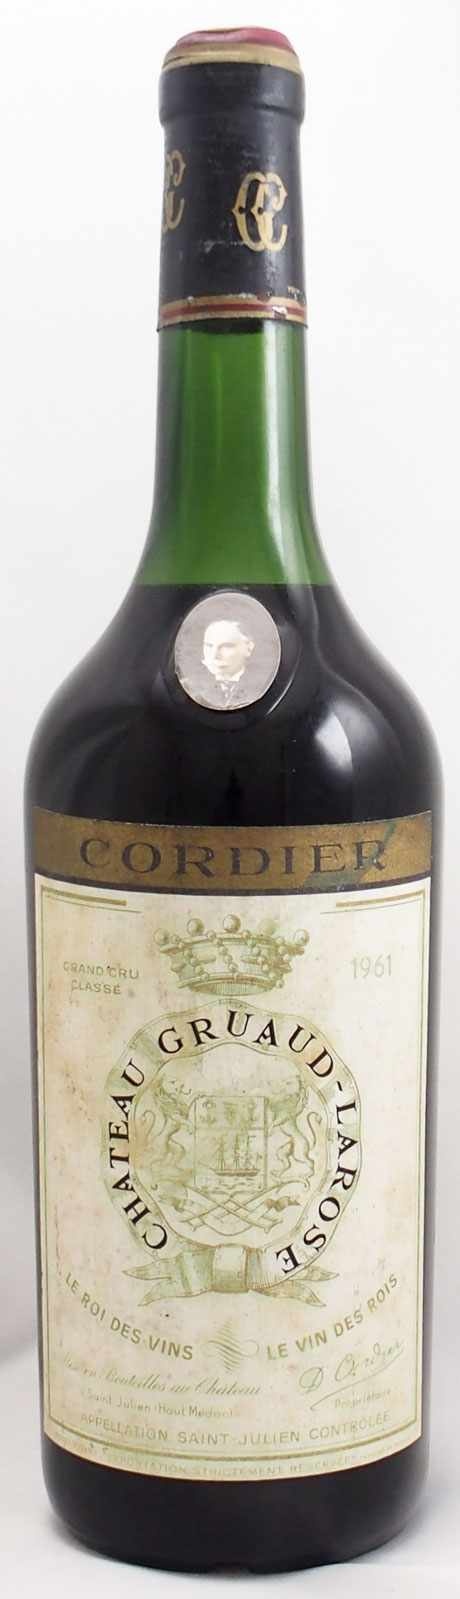 22,050円ボルドー ワイン グレート ヴィンテージ シャトー グリュオ ラローズ1961年